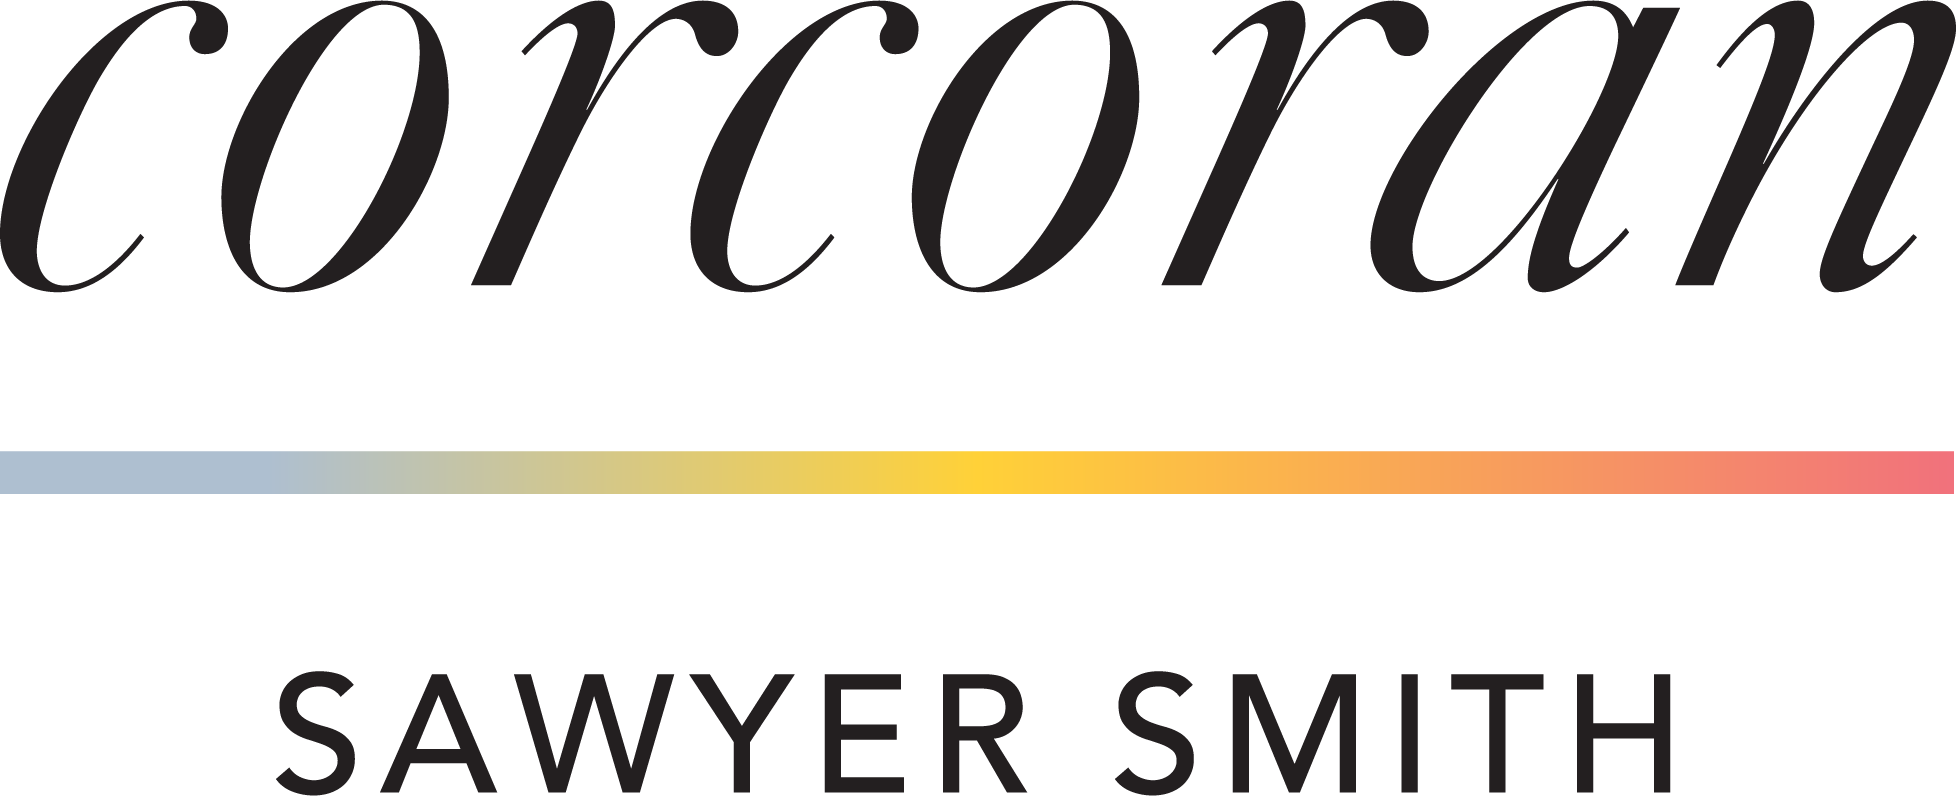 Corcoran Sawyer Smith logo